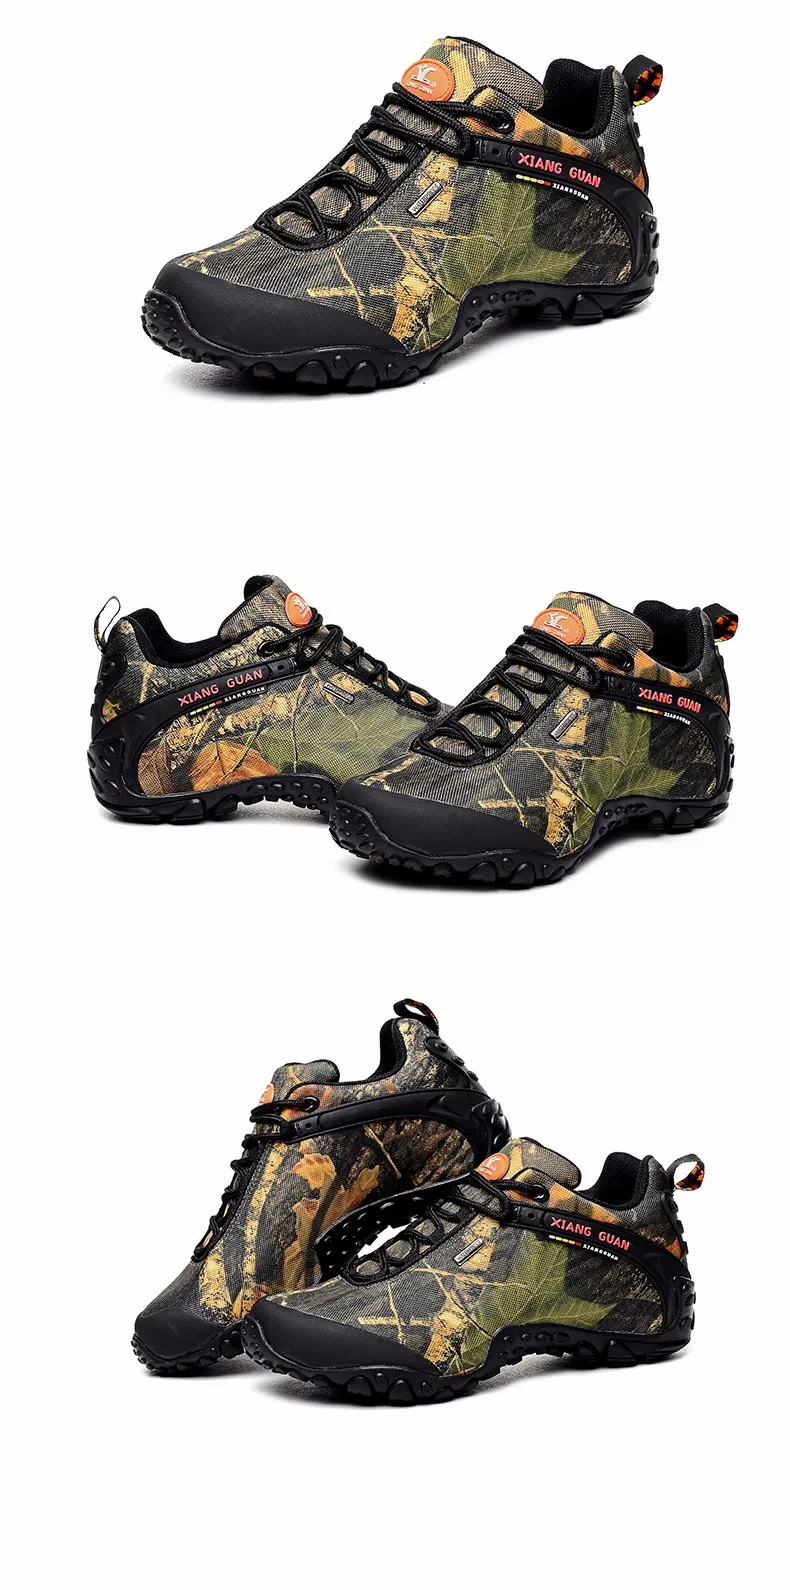 XiangGuan/брендовая мужская и женская уличная походная обувь; Водонепроницаемая парусиновая Спортивная Треккинговая обувь; нескользящая обувь для альпинизма